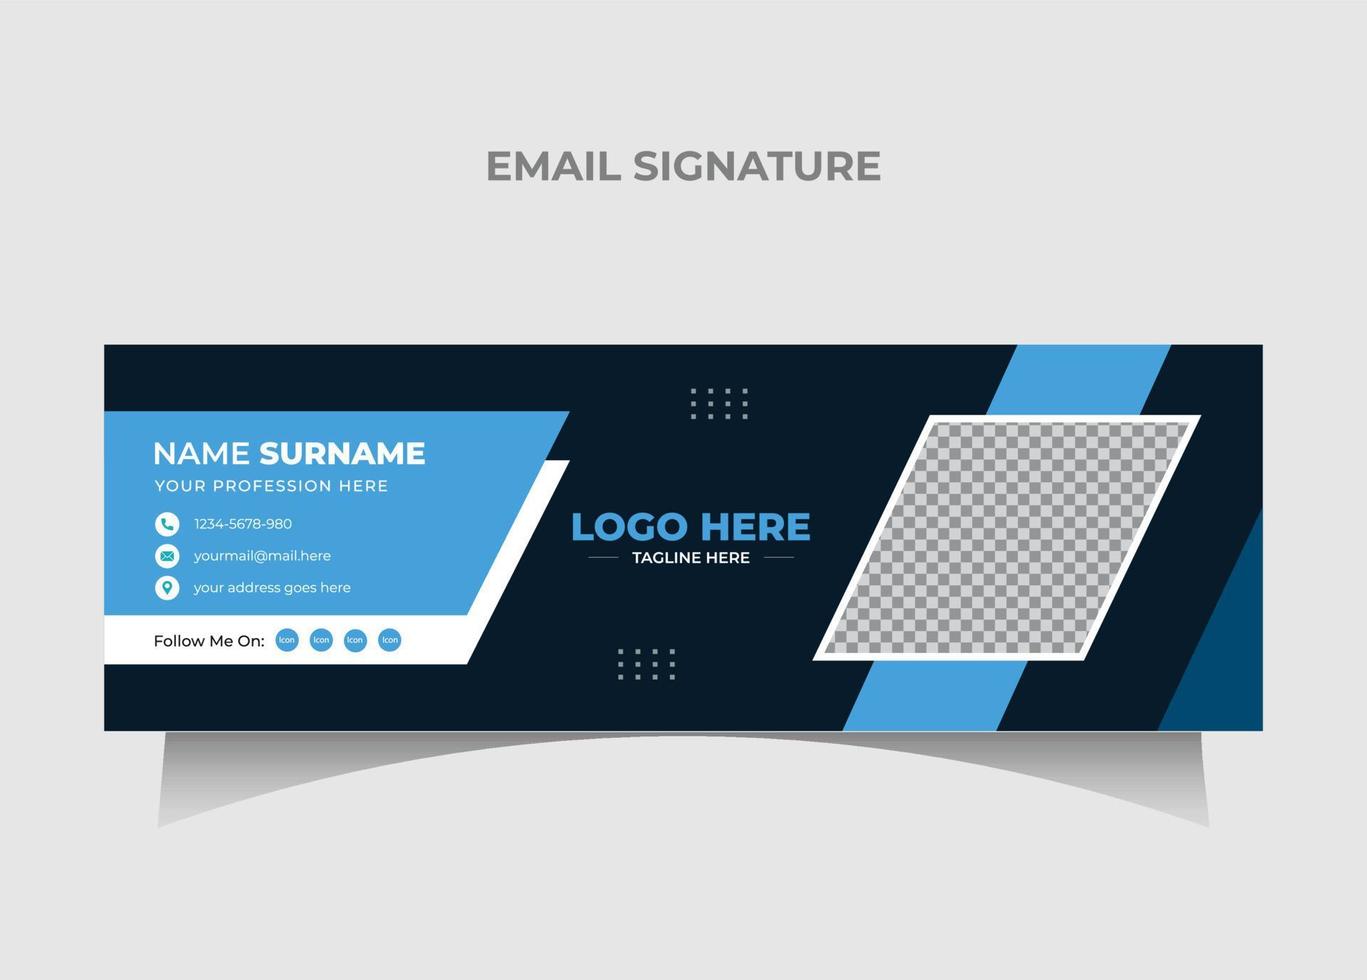 Modernes, sauberes E-Mail-Signatur-Vorlagendesign. Kreative Mehrzweck-E-Mail-Signaturen für Unternehmen pro Vektor